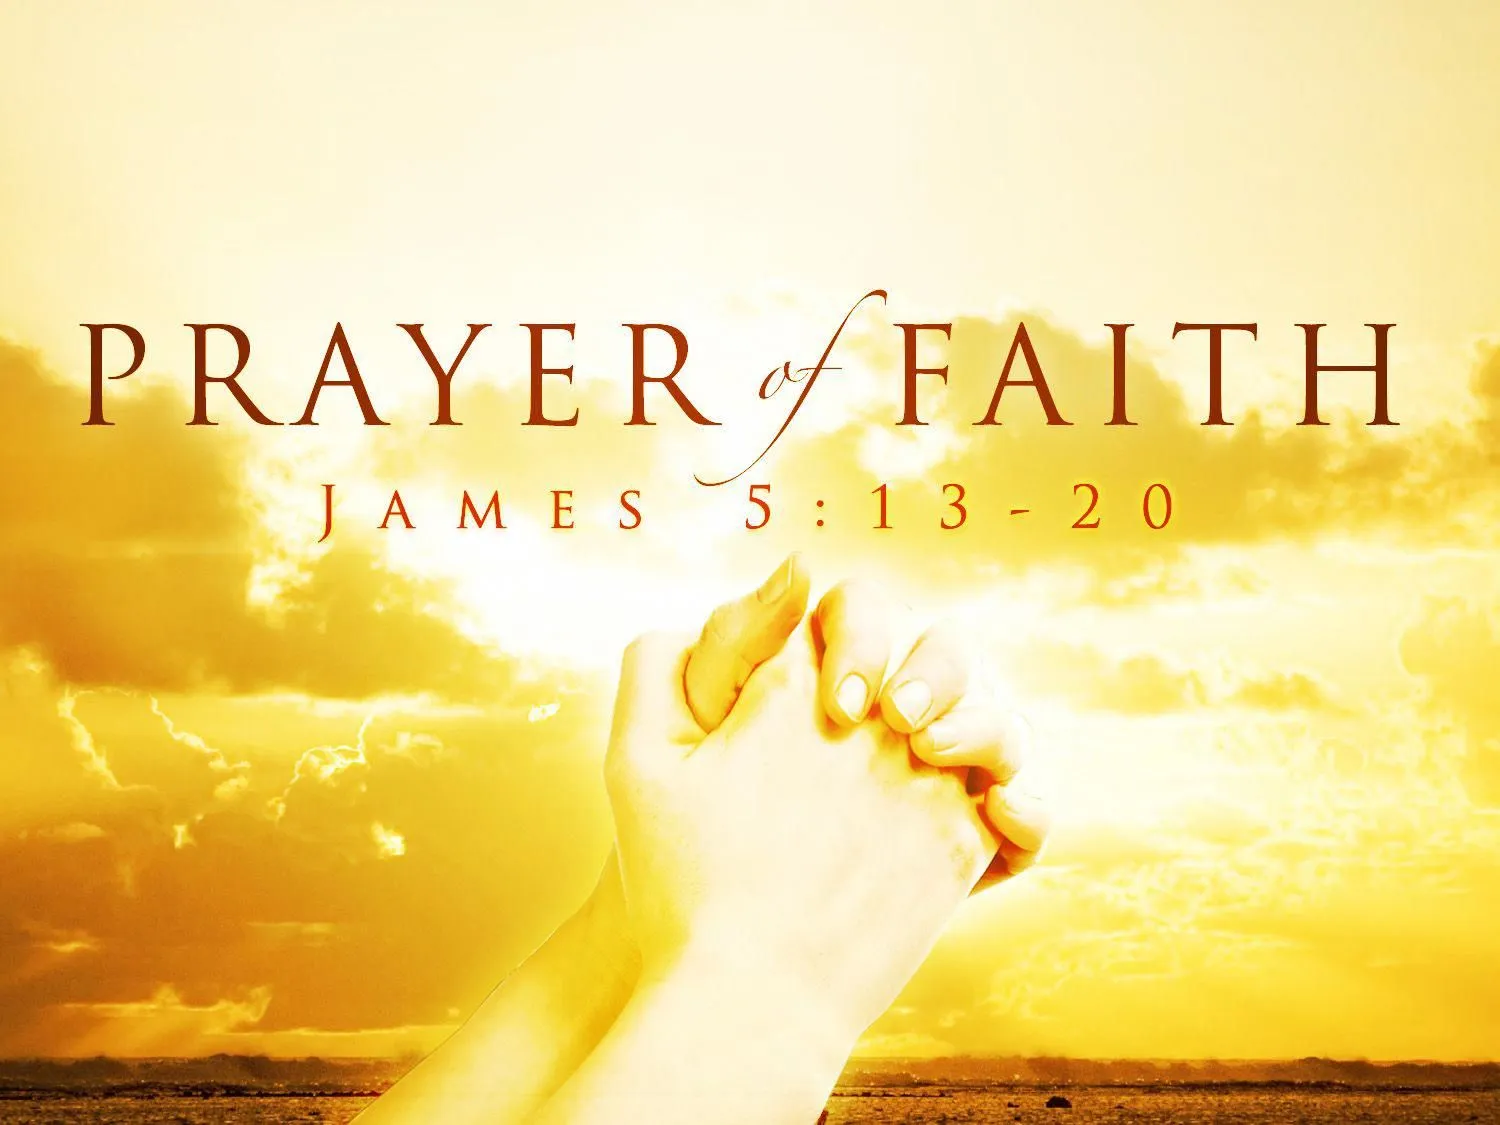 the prayer of faith